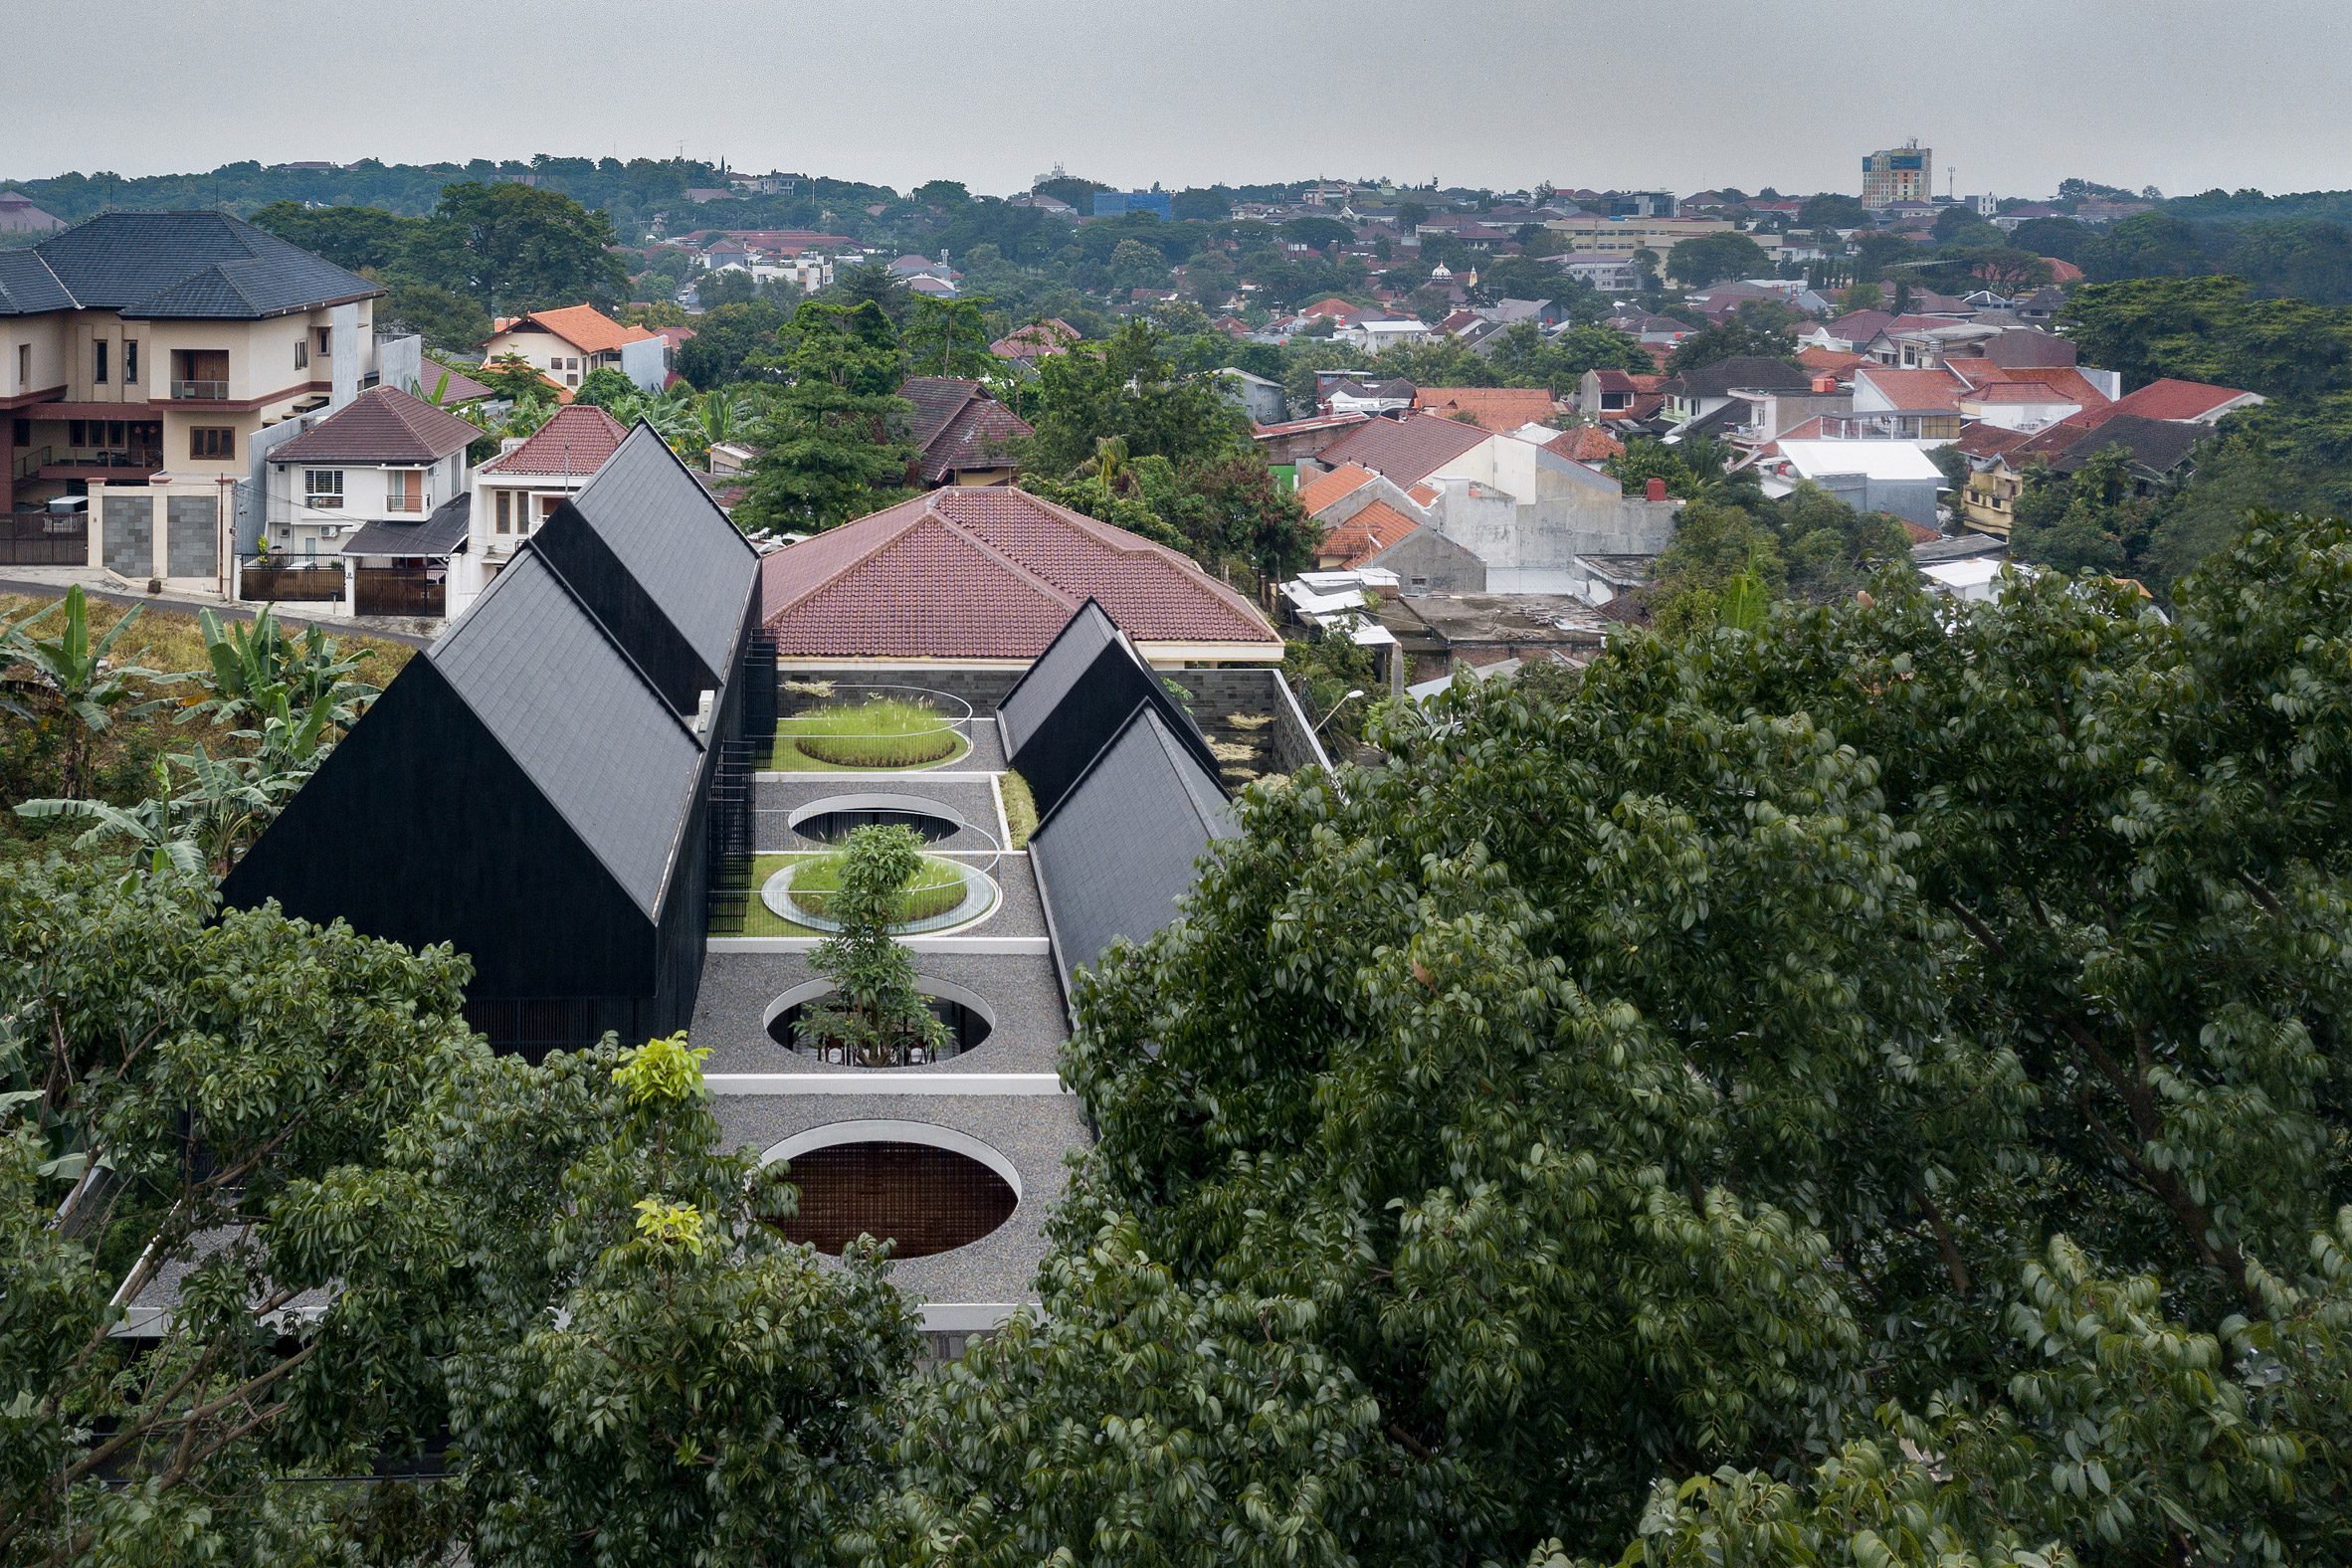 Tamara Wibowo建筑师事务所的Halo形天窗照亮了印尼的家|ART-Arrakis | 建筑室内设计的创新与灵感